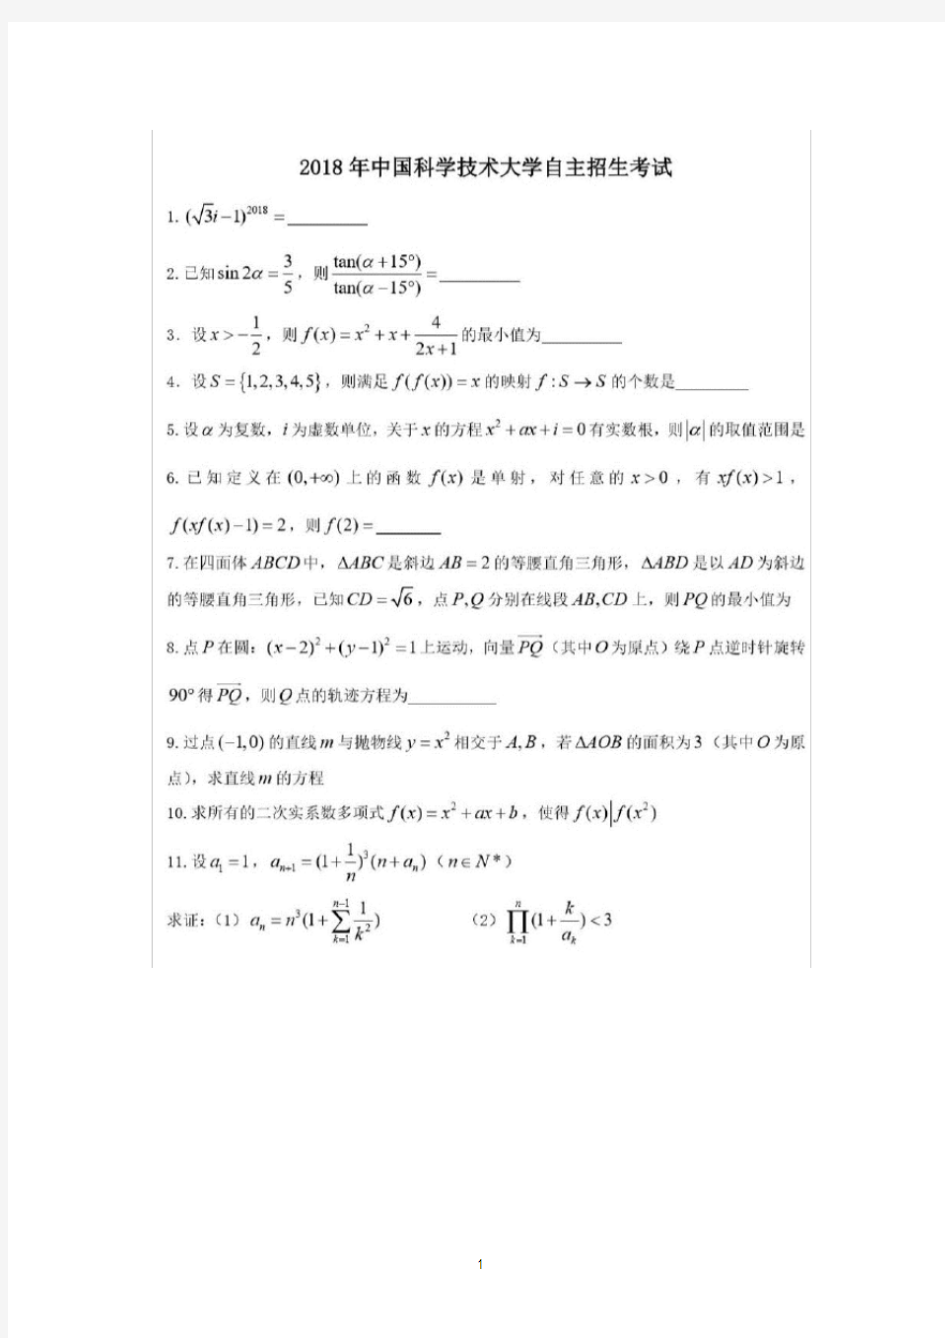 2018年中国科技大学自主招生数学试题及答案